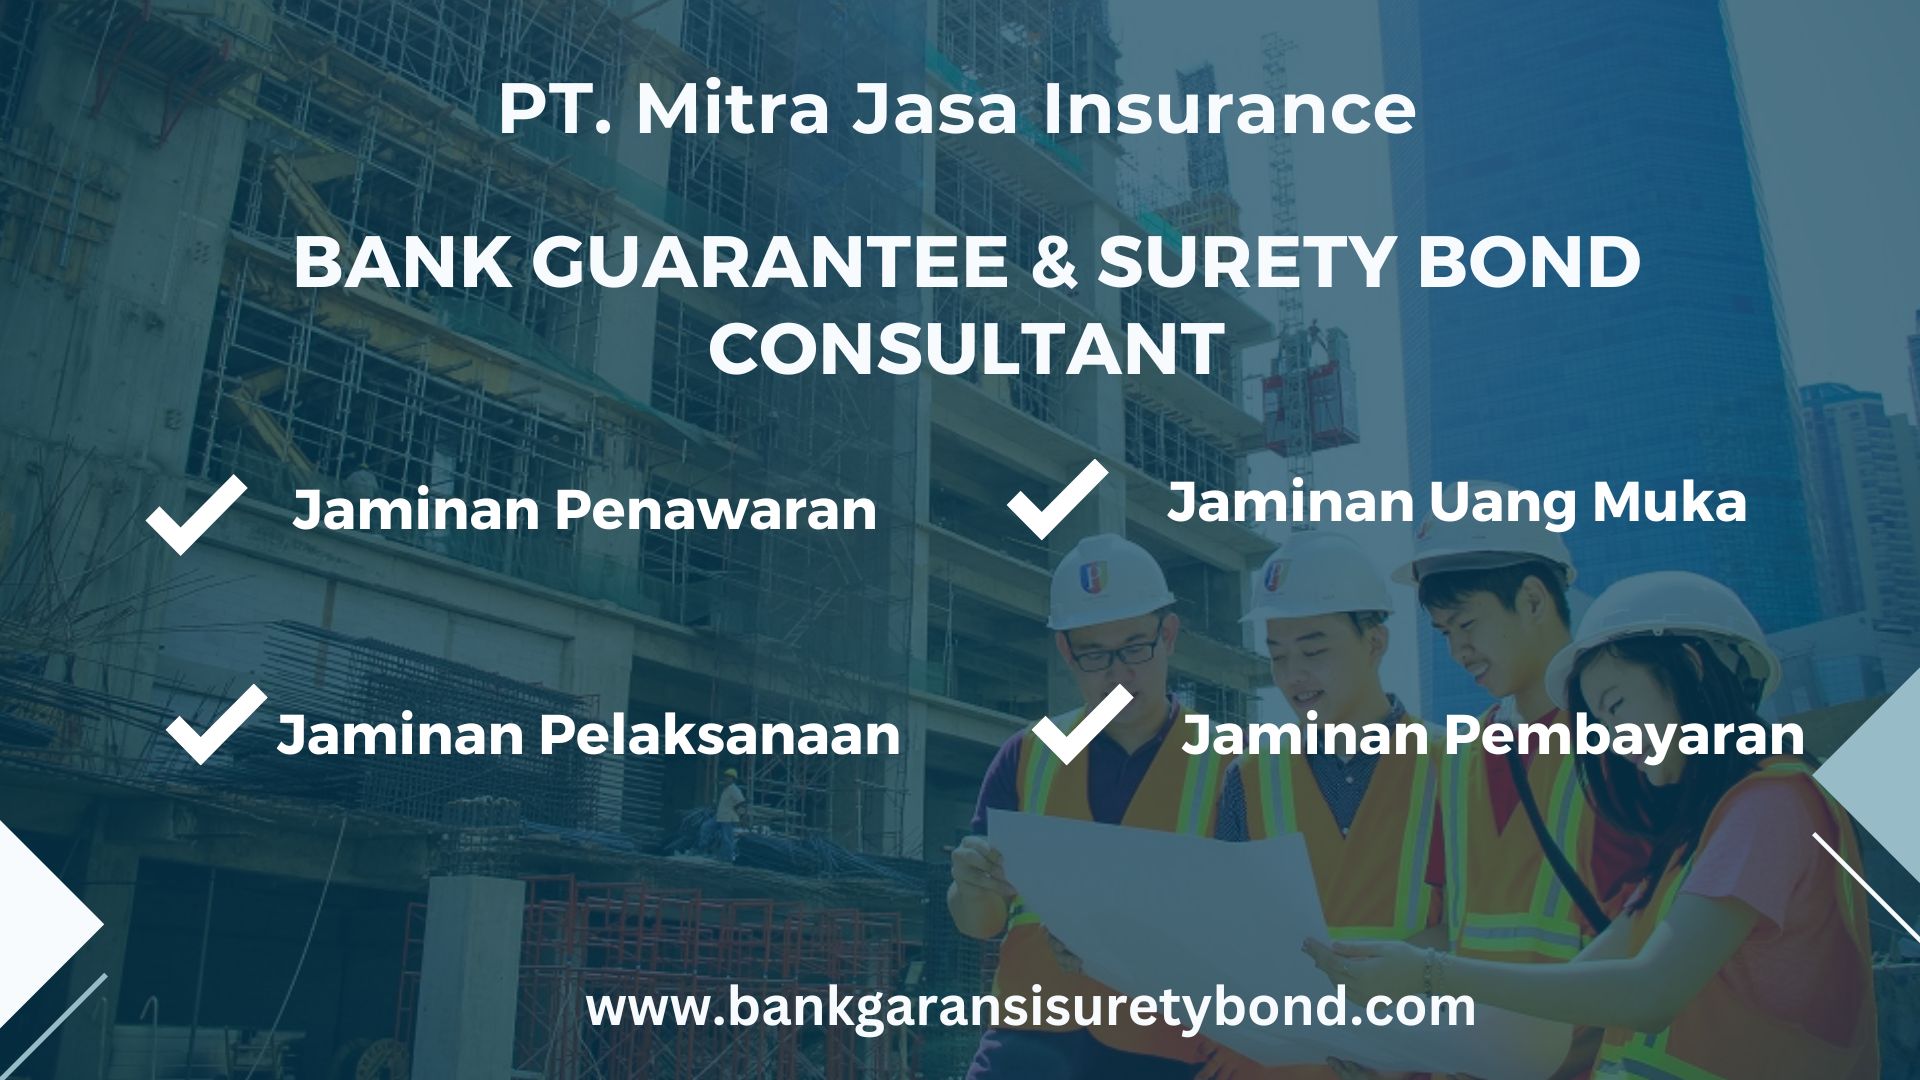 Dapatkan Jasa Pembuatan Surety Bond Menjamin Kesuksesan Proyek Anda di Jakarta, Layanan Profesional, Proses Cepat, Hasil Berkualitas Hubungi Kami Sekarang!